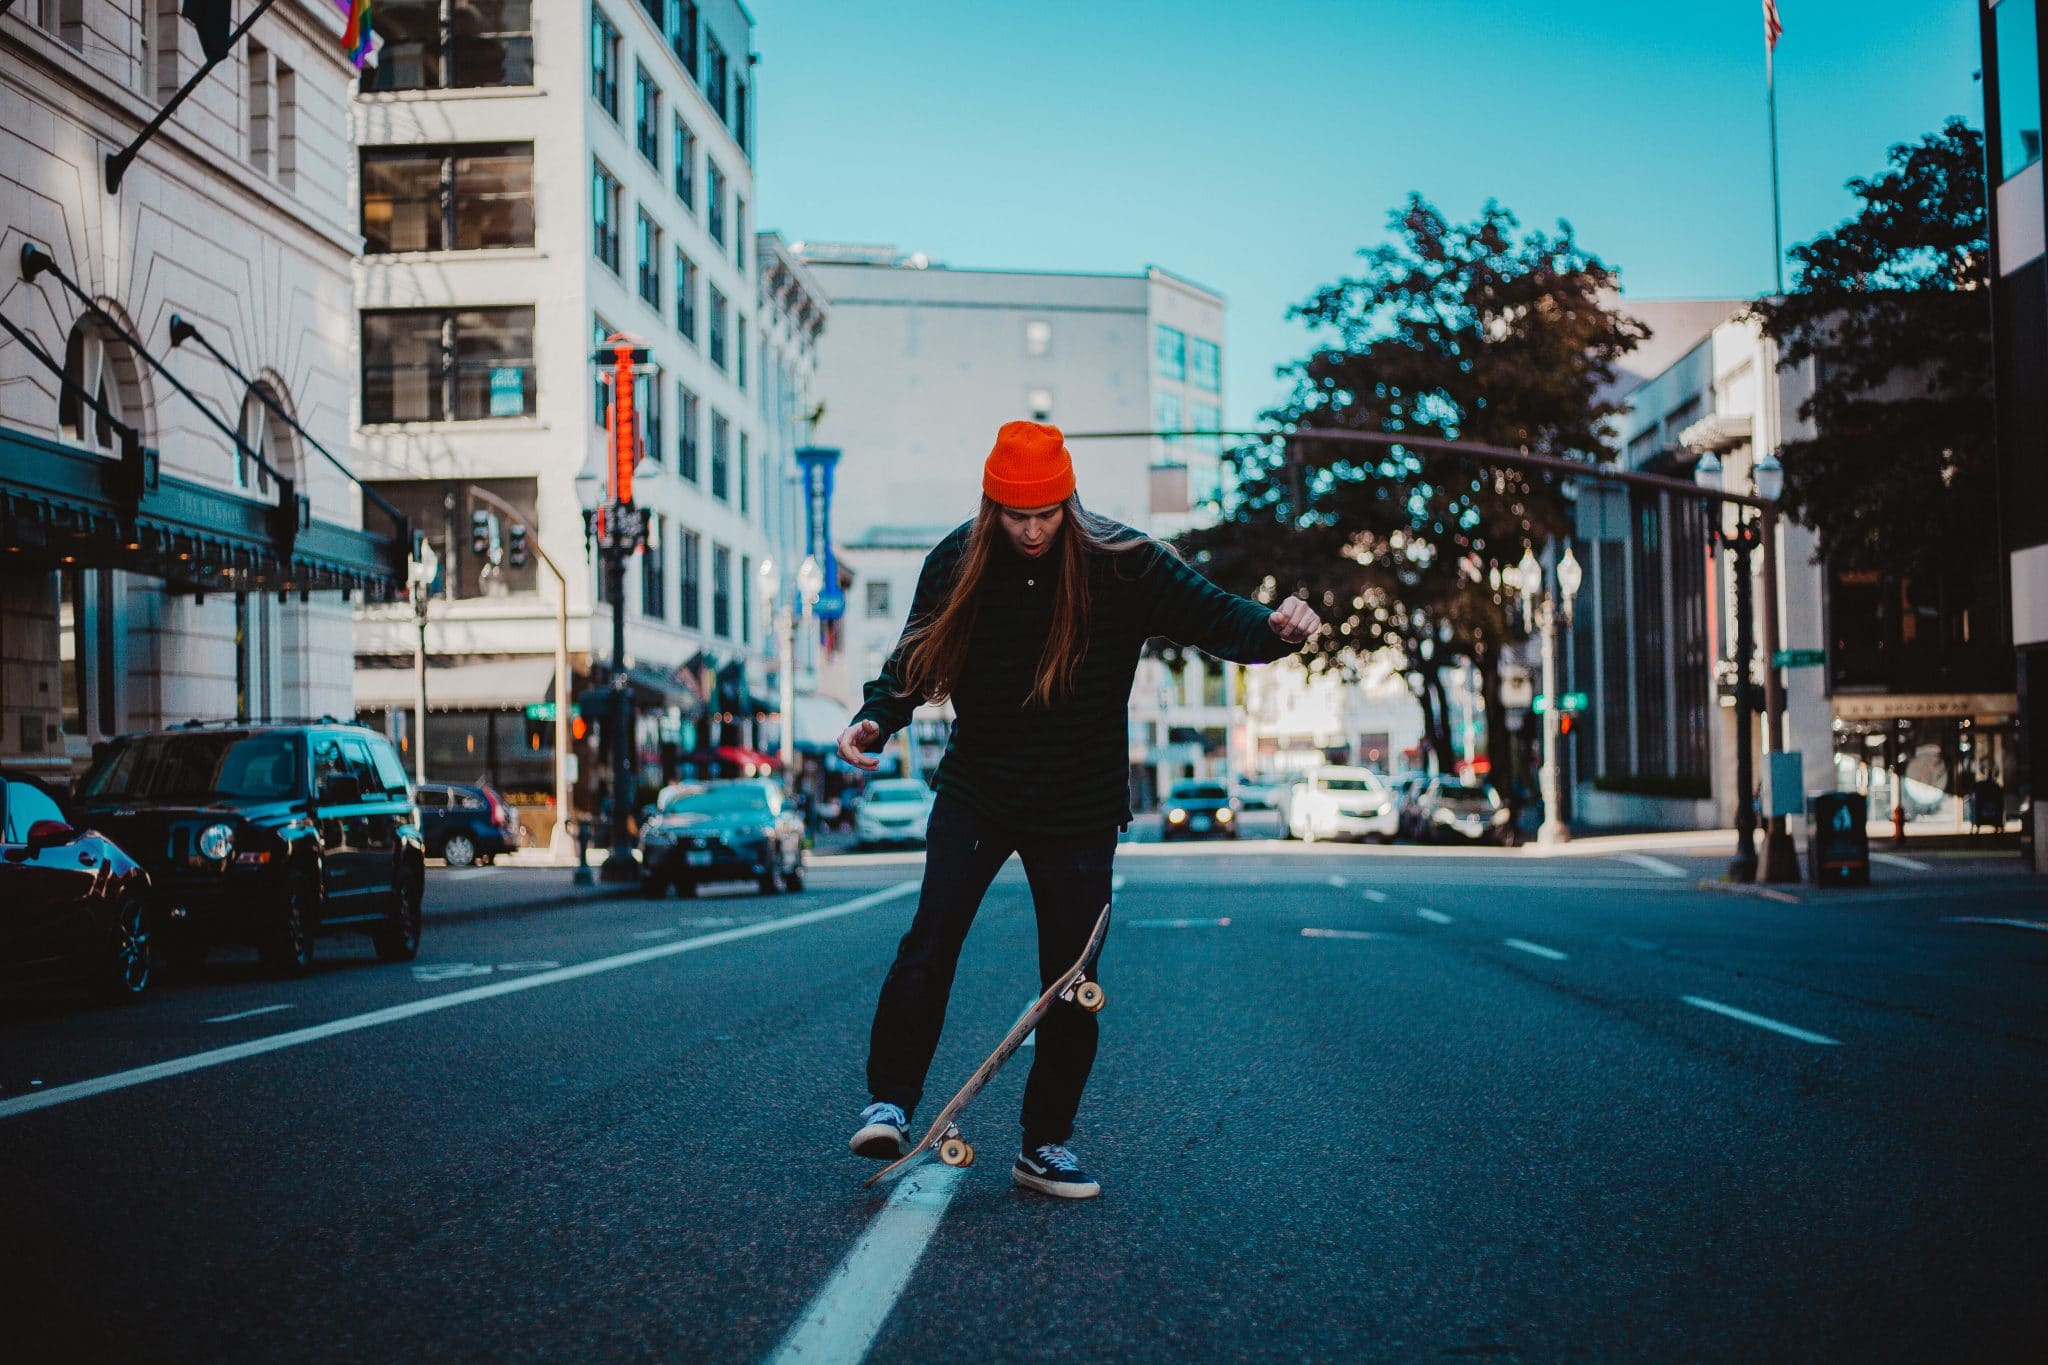 Woman skateboard on road